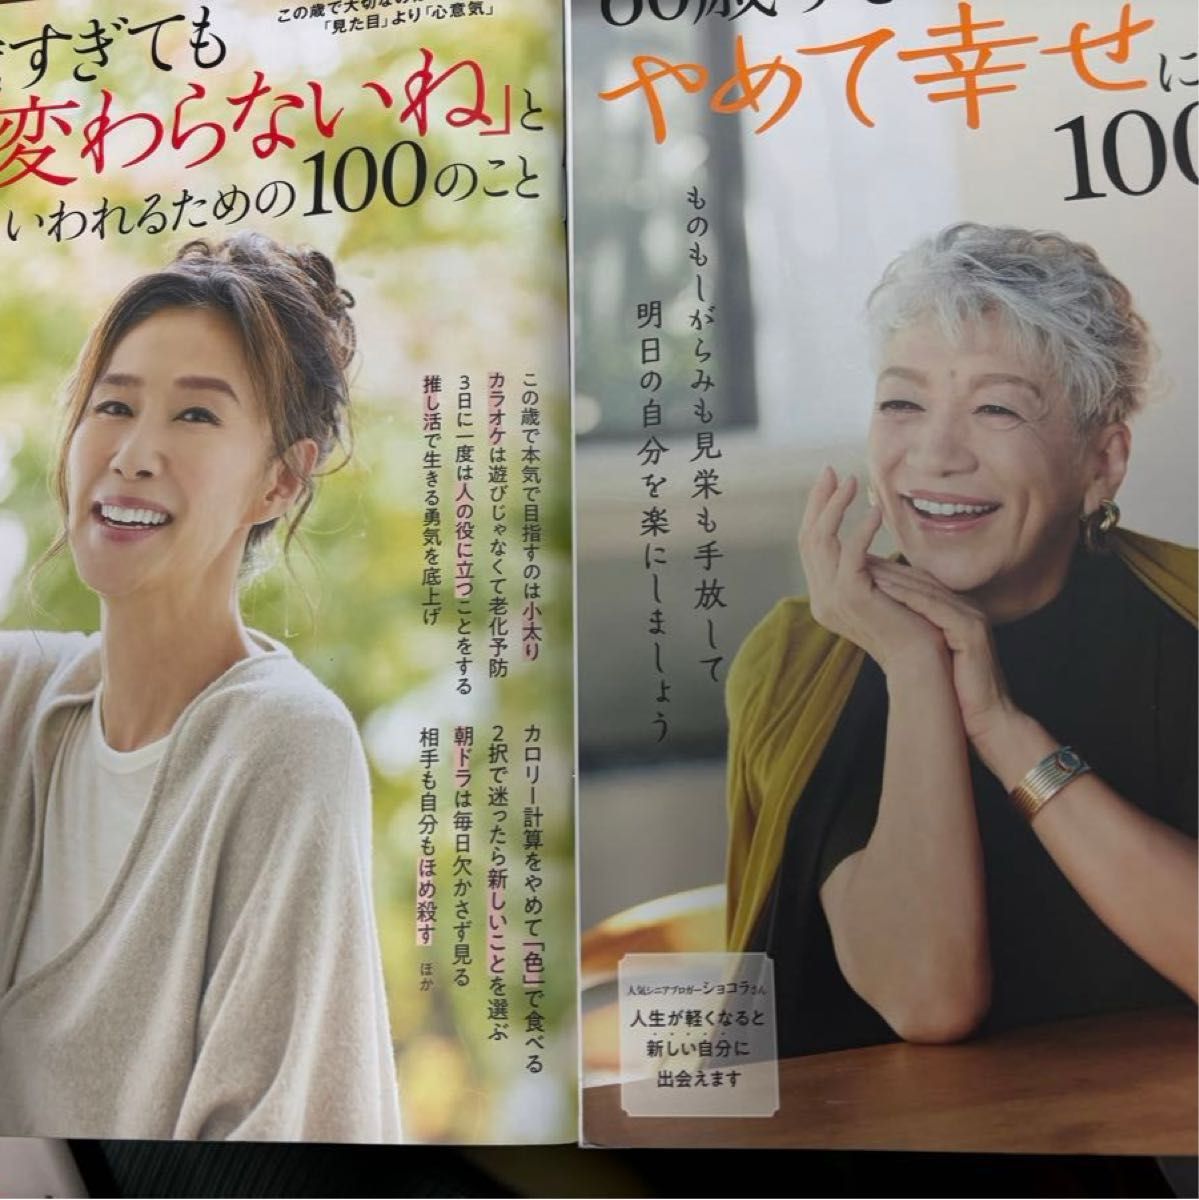 60歳すぎたらやめて幸せになれる100のこと 60歳過ぎても変わらないねと言われるための100のこと2冊セット